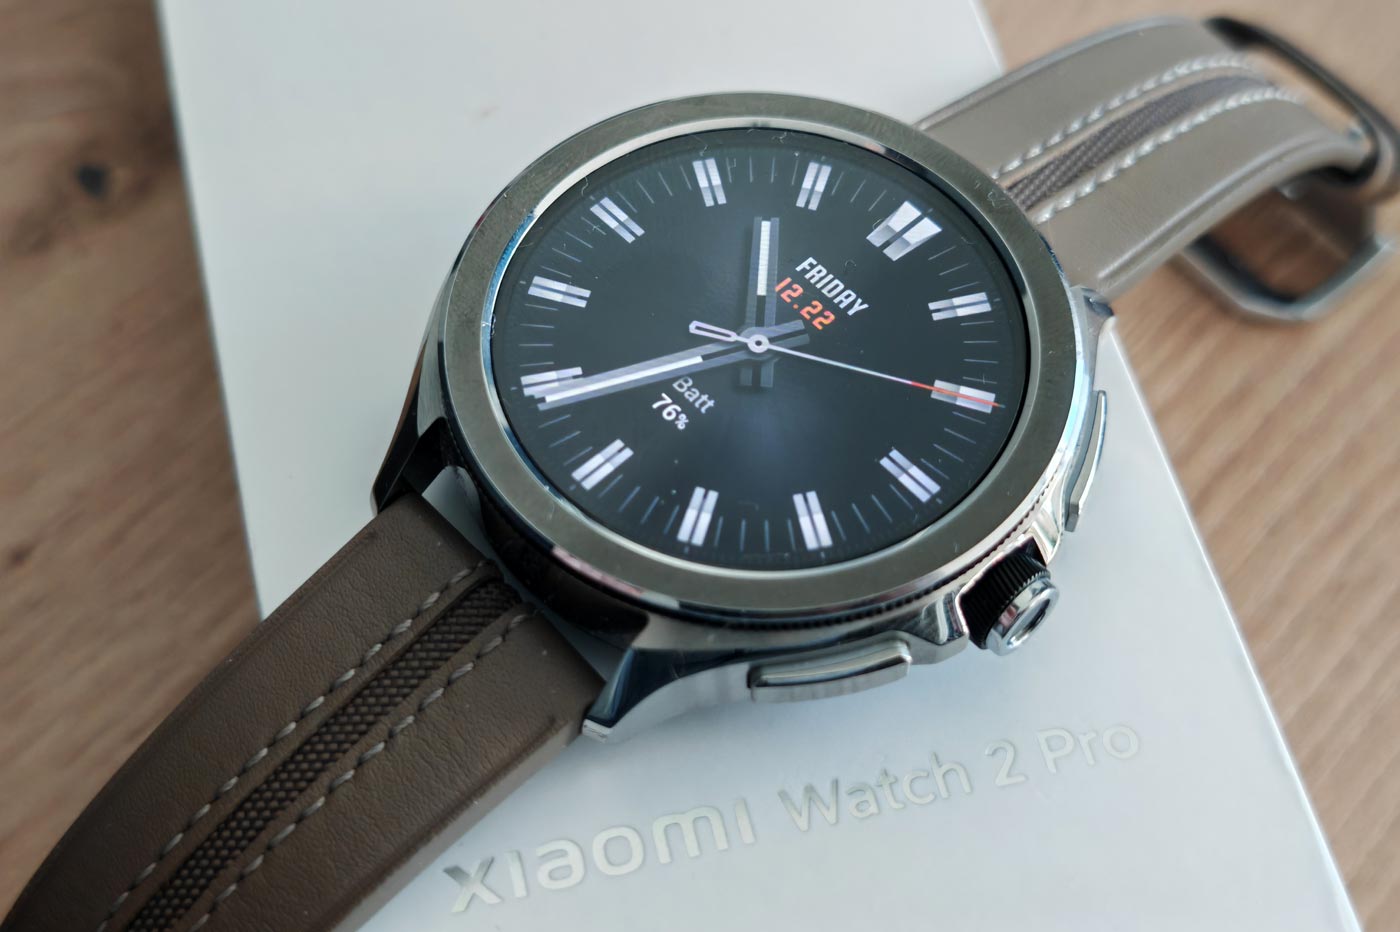 Premier test de la Xiaomi Watch S1 Pro: Une smartwatch trop chère pour ce  qu'elle offre